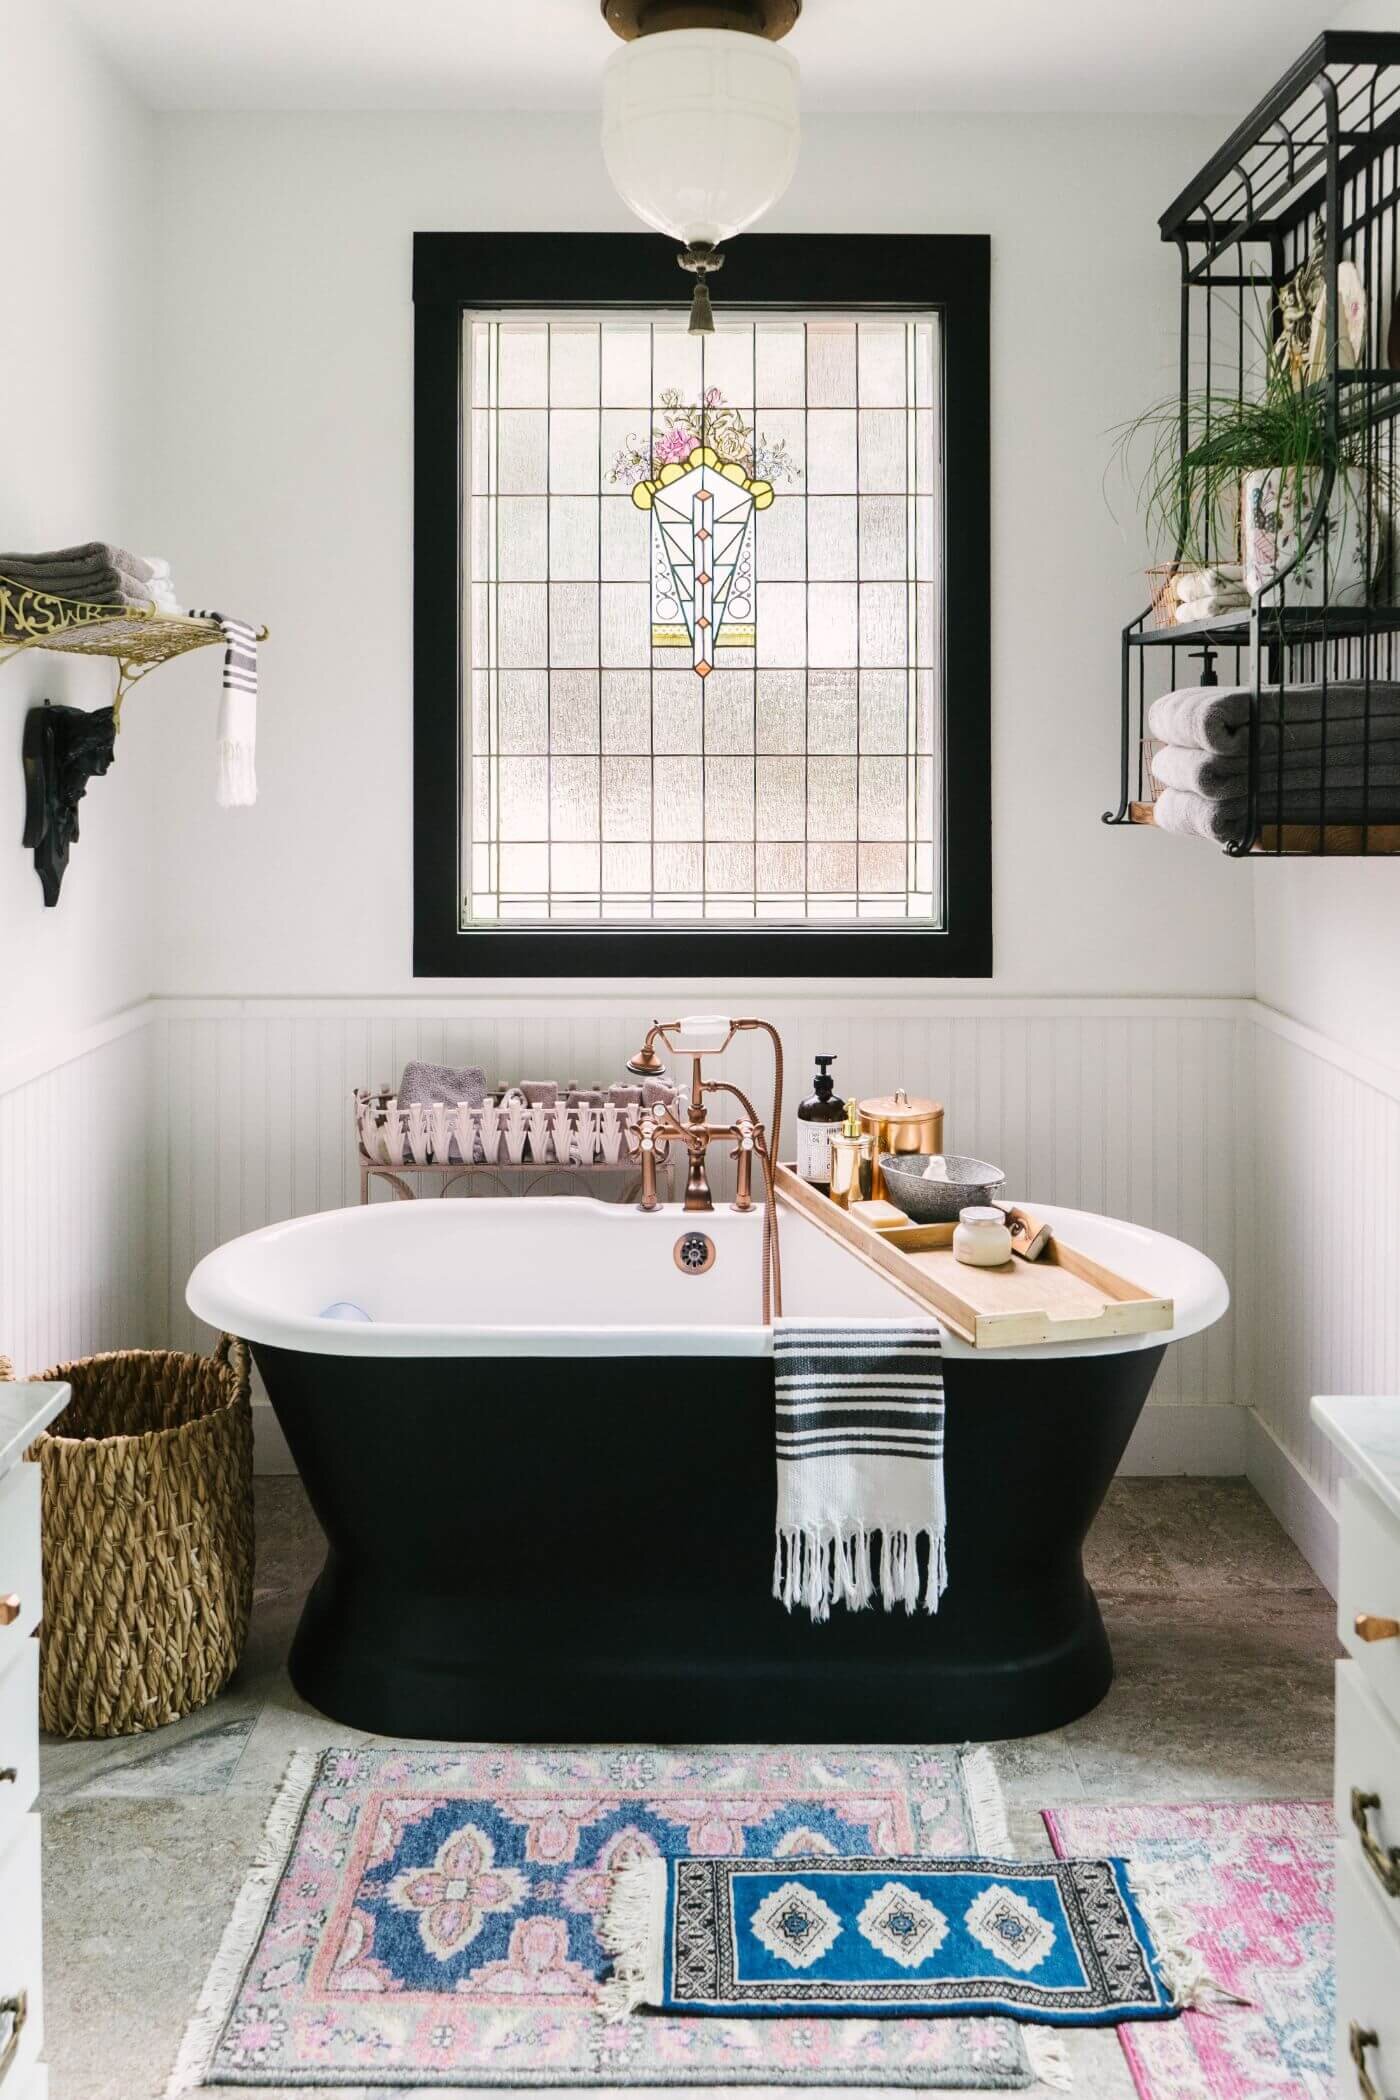 艺术现代农家-黑色浴缸分层地毯。jpg